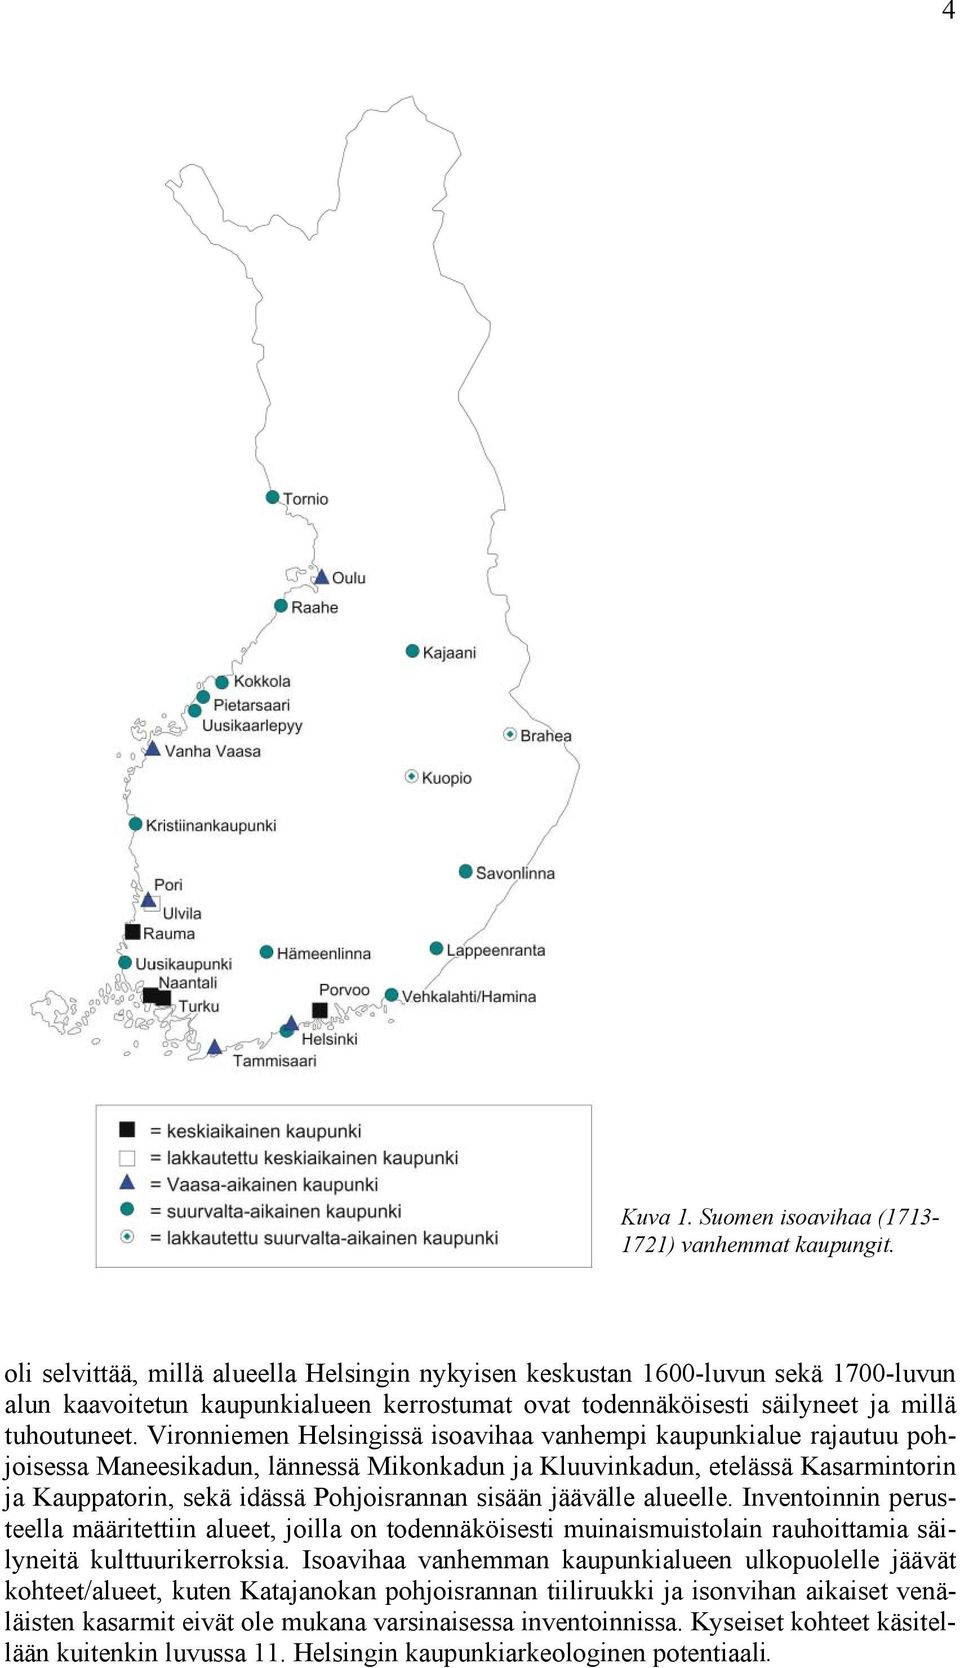 Vironniemen Helsingissä isoavihaa vanhempi kaupunkialue rajautuu pohjoisessa Maneesikadun, lännessä Mikonkadun ja Kluuvinkadun, etelässä Kasarminn ja Kauppan, sekä idässä Pohjoisrannan sisään